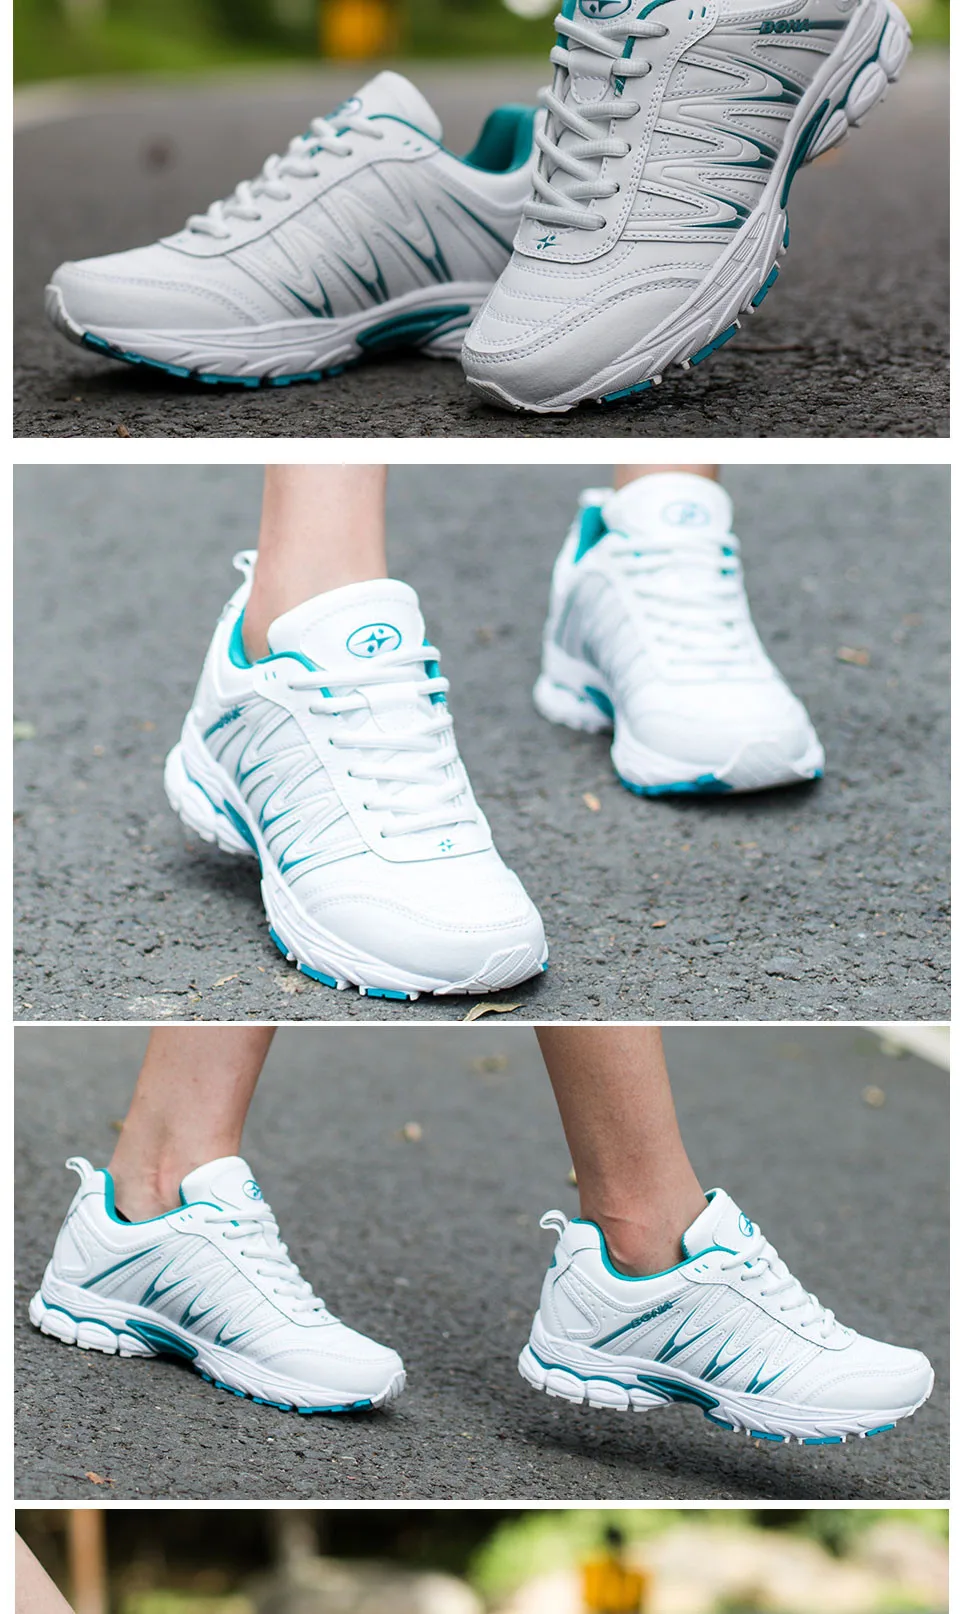 BONA/Новинка; Лидер продаж; стильные женские кроссовки; спортивная обувь на шнуровке; обувь для бега и прогулок; спортивная обувь; удобные кроссовки для женщин